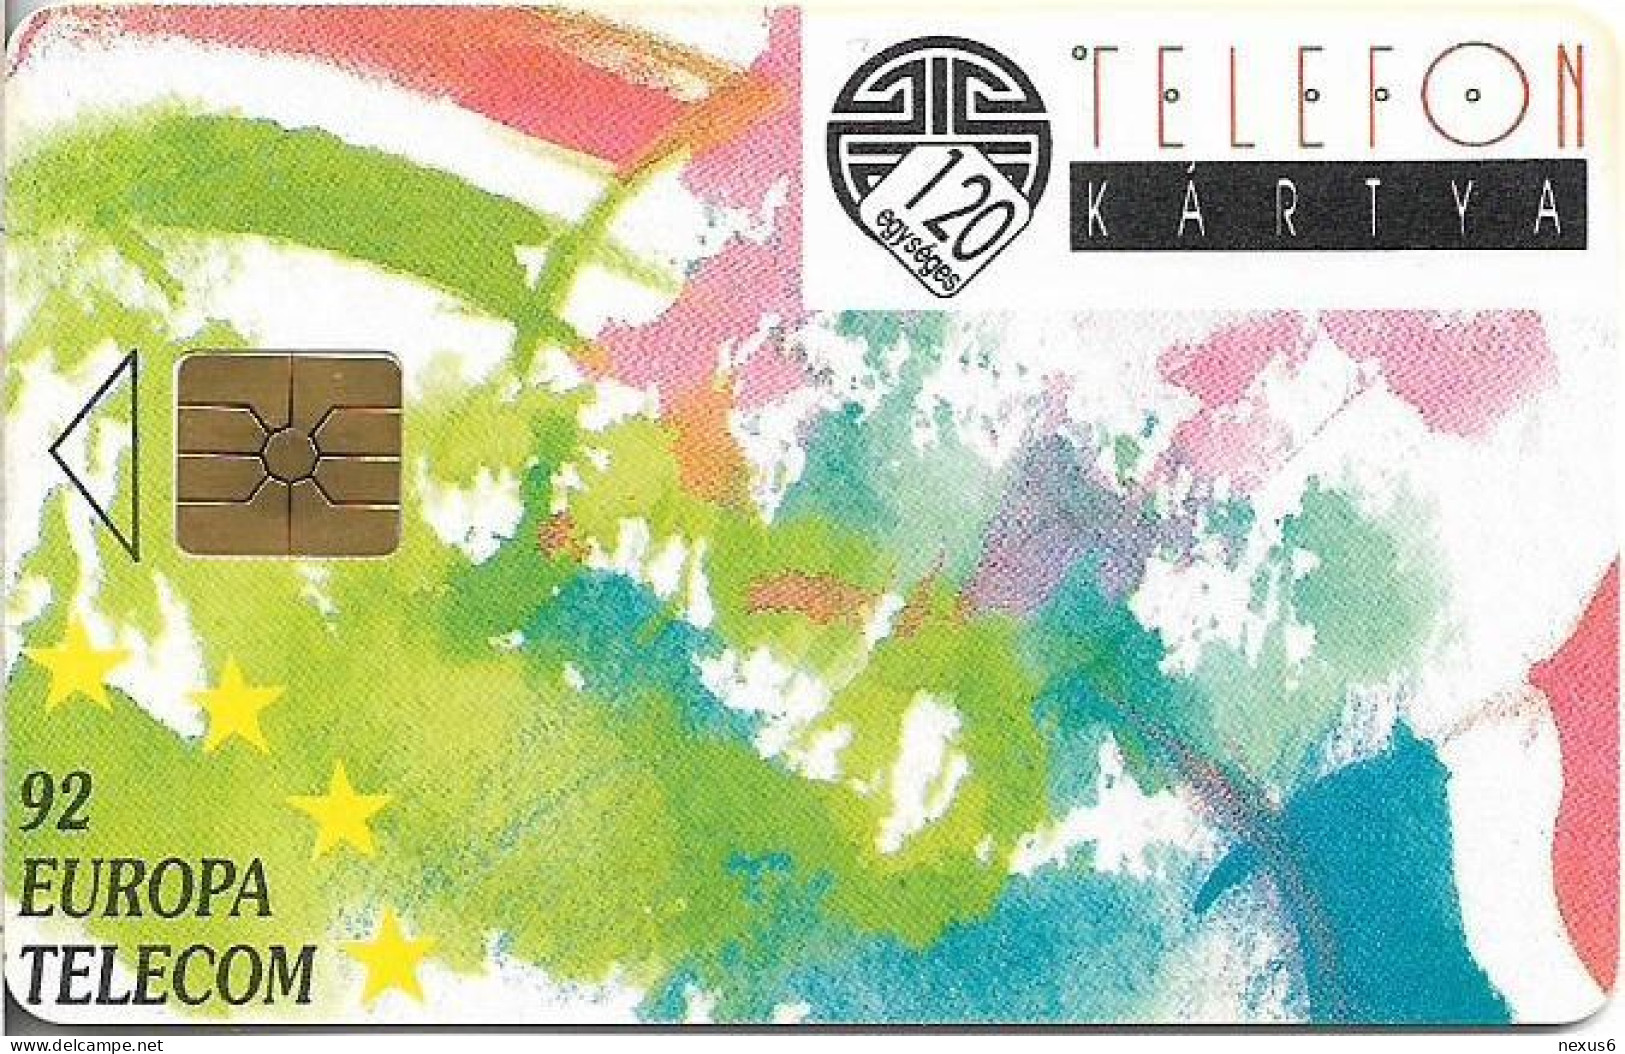 Hungary - Matáv - Europa Telecom 92, Gem1B Not Symm. Red, With Transp. Moreno, 10.1992, 120U, 10.000ex, Used - Ungheria